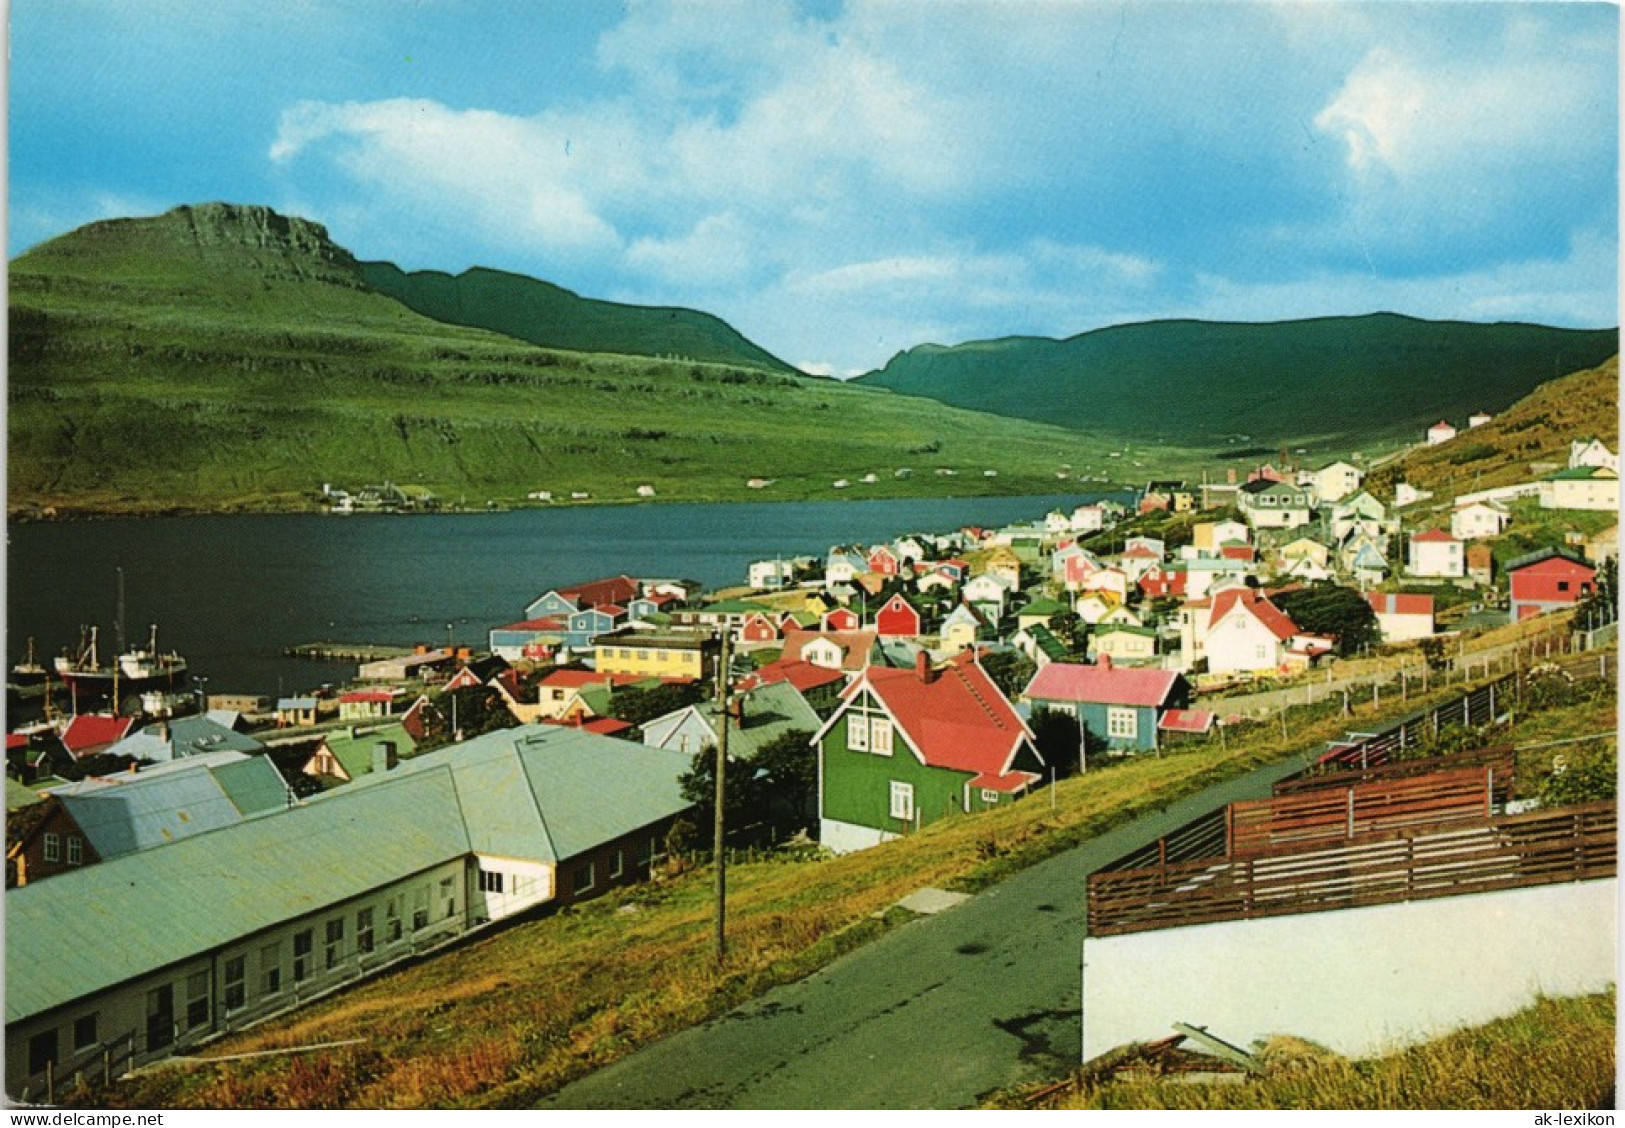 Postcard Tvøroyri Tverå Oyrnafjall Suðuroy Faroe Islands 1975 - Faeröer